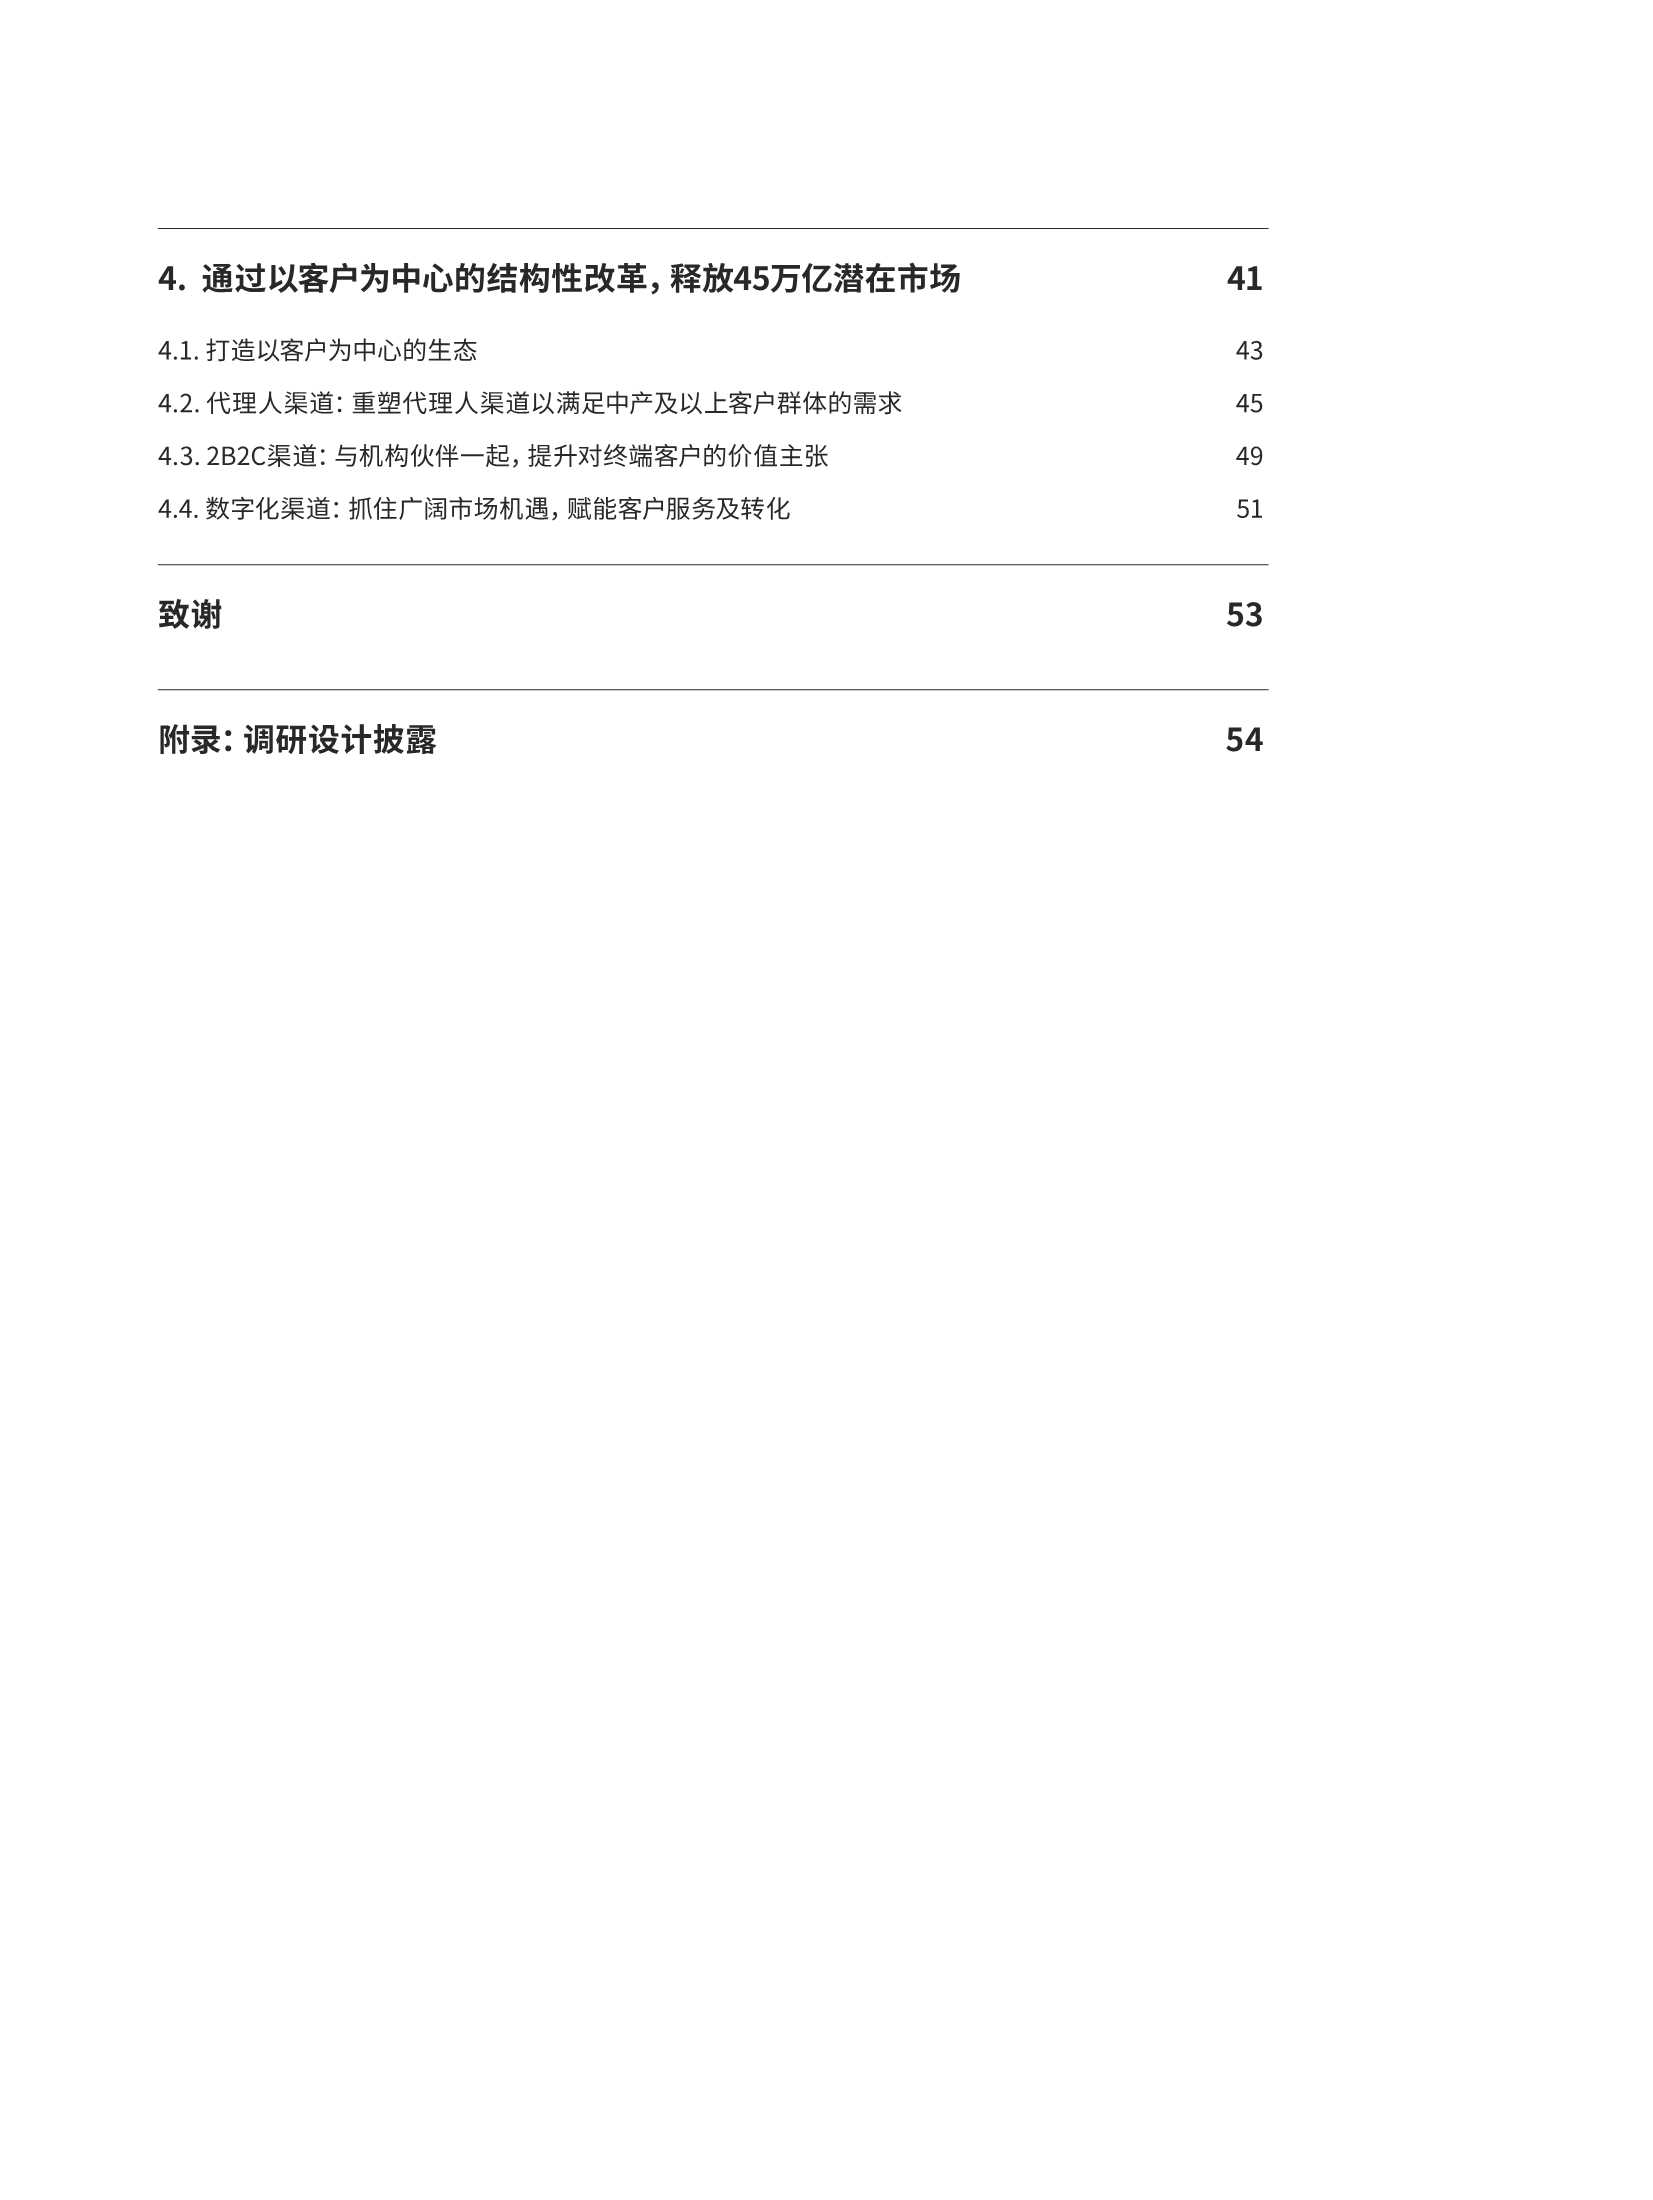 奥纬咨询-中国人身险市场未来展望，砥砺前行，静待花开-2022.03-60页